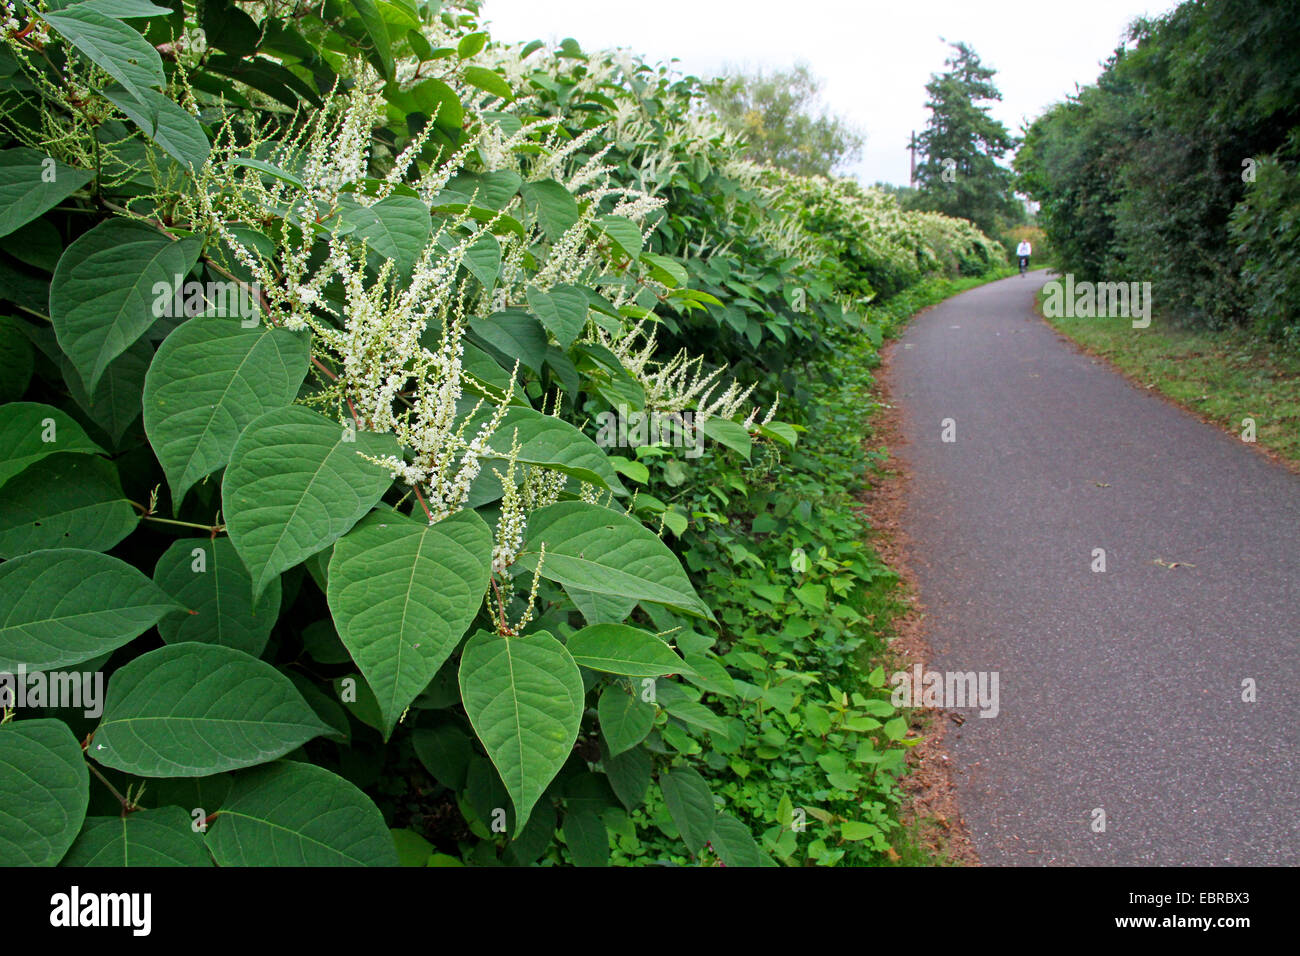 La renouée japonaise (Fallopia japonica, Reynoutria japonica), de plantes fleuries à Ruhr-Valley, piste cyclable, Allemagne Nordrhein Westfalen Banque D'Images